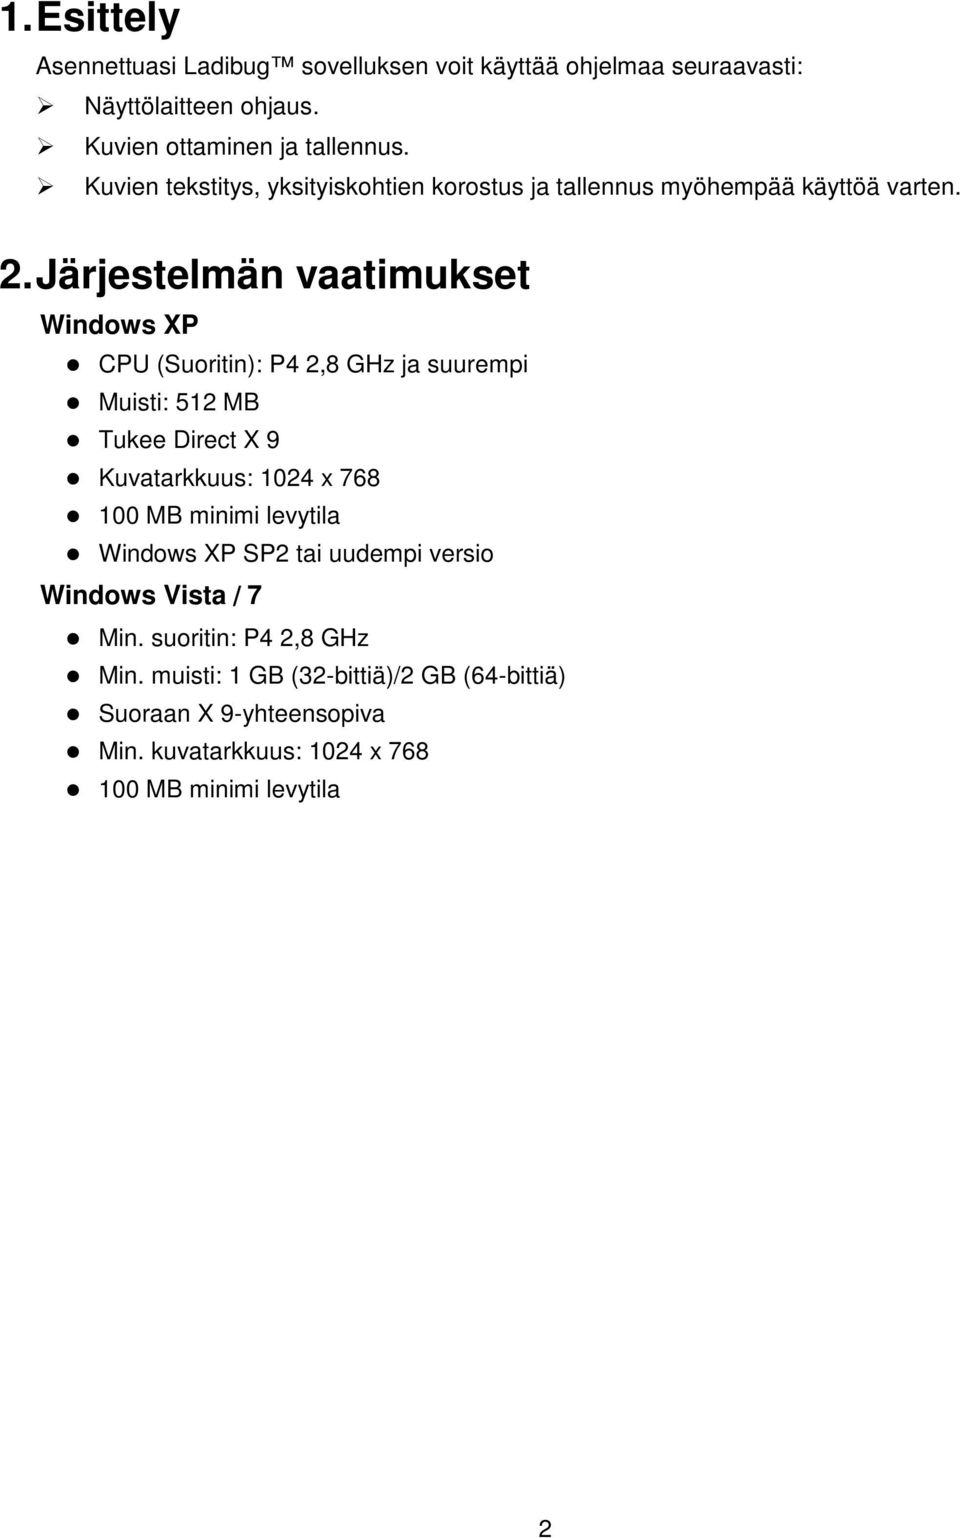 Järjestelmän vaatimukset Windows XP CPU (Suoritin): P4 2,8 GHz ja suurempi Muisti: 512 MB Tukee Direct X 9 Kuvatarkkuus: 1024 x 768 100 MB